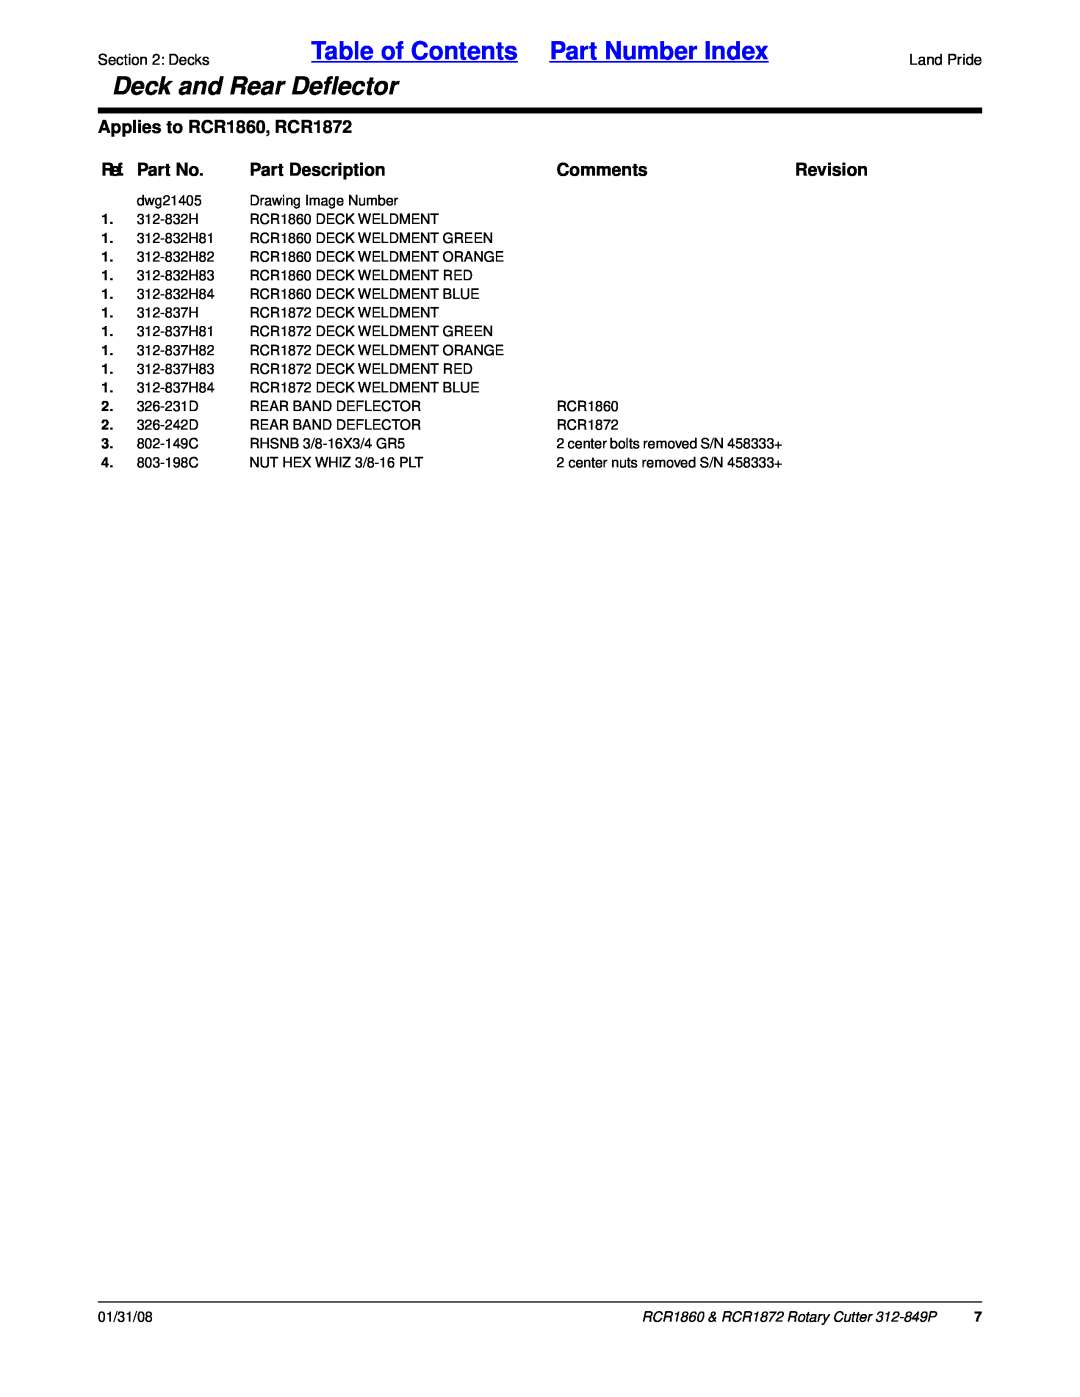 Land Pride RCR1872, RCR1860 manual Ref. Part No, Part Description, Comments, Revision, Table of Contents Part Number Index 